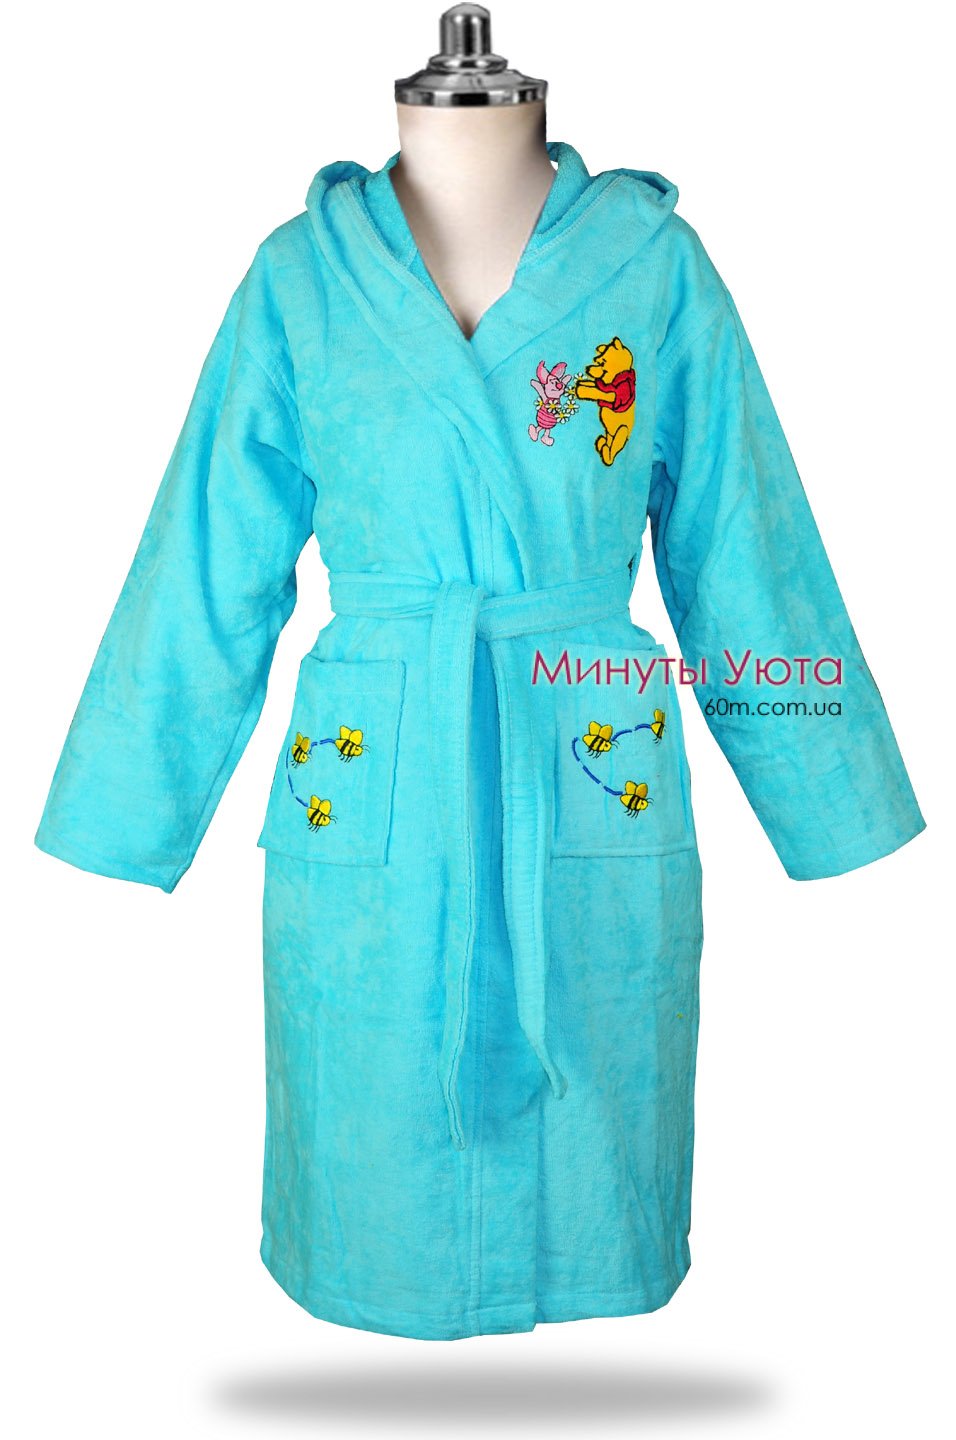 Хлопковый халат  в бирюзовом цвете с вышивкой на карманах 